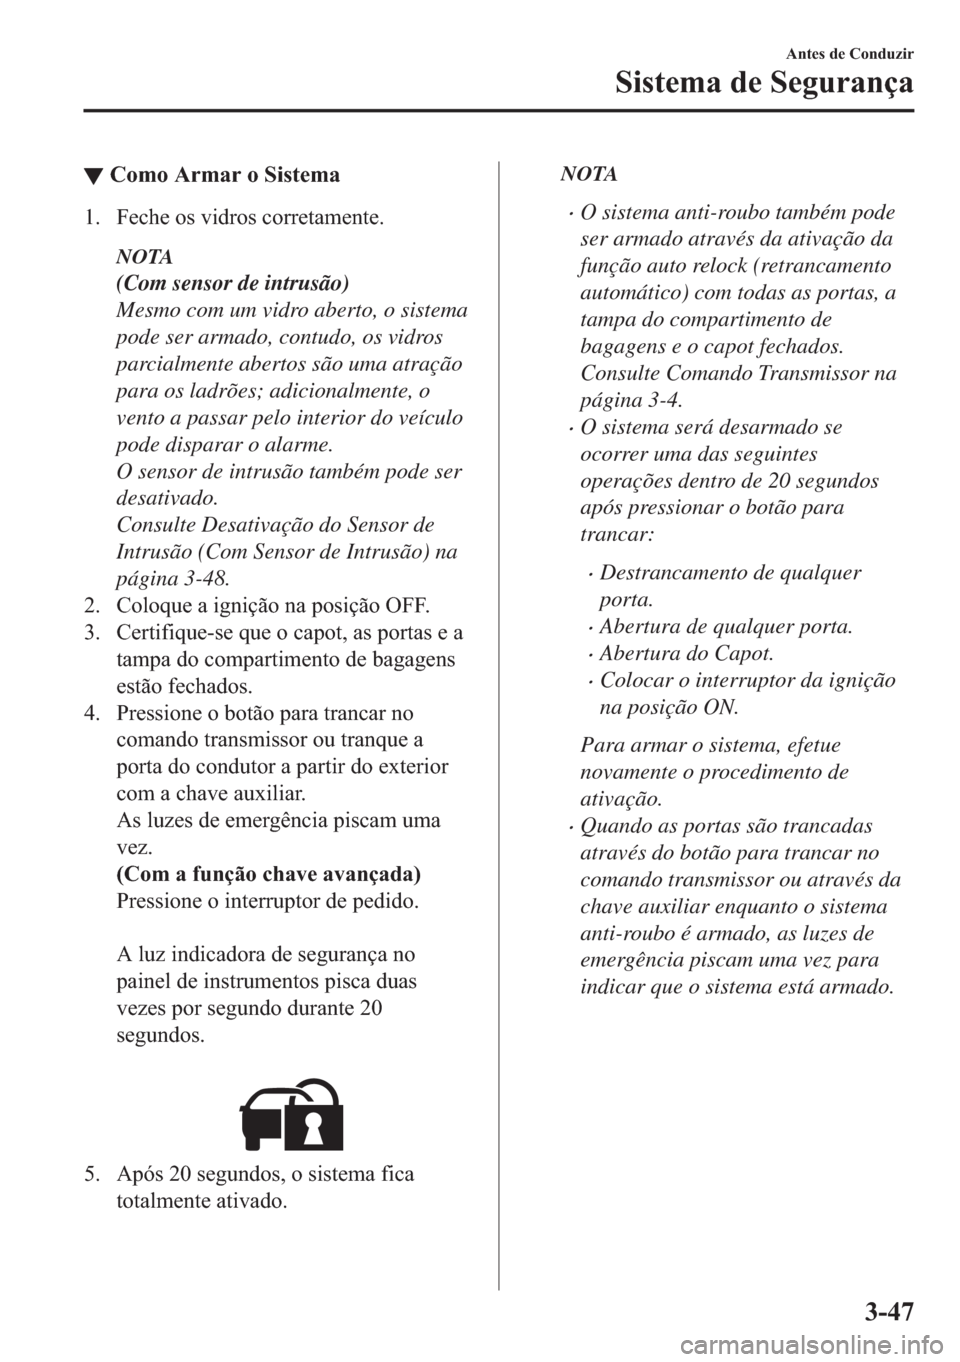 MAZDA MODEL 2 2019  Manual do proprietário (in Portuguese) ▼�&�R�P�R��$�U�P�D�U��R��6�L�V�W�H�P�D
�� �)�H�F�K�H��R�V��Y�L�G�U�R�V��F�R�U�U�H�W�D�P�H�Q�W�H�
NOTA
(Com sensor de intrusão)
Mesmo com um vidro aberto, o sistema
pode ser armado, contudo